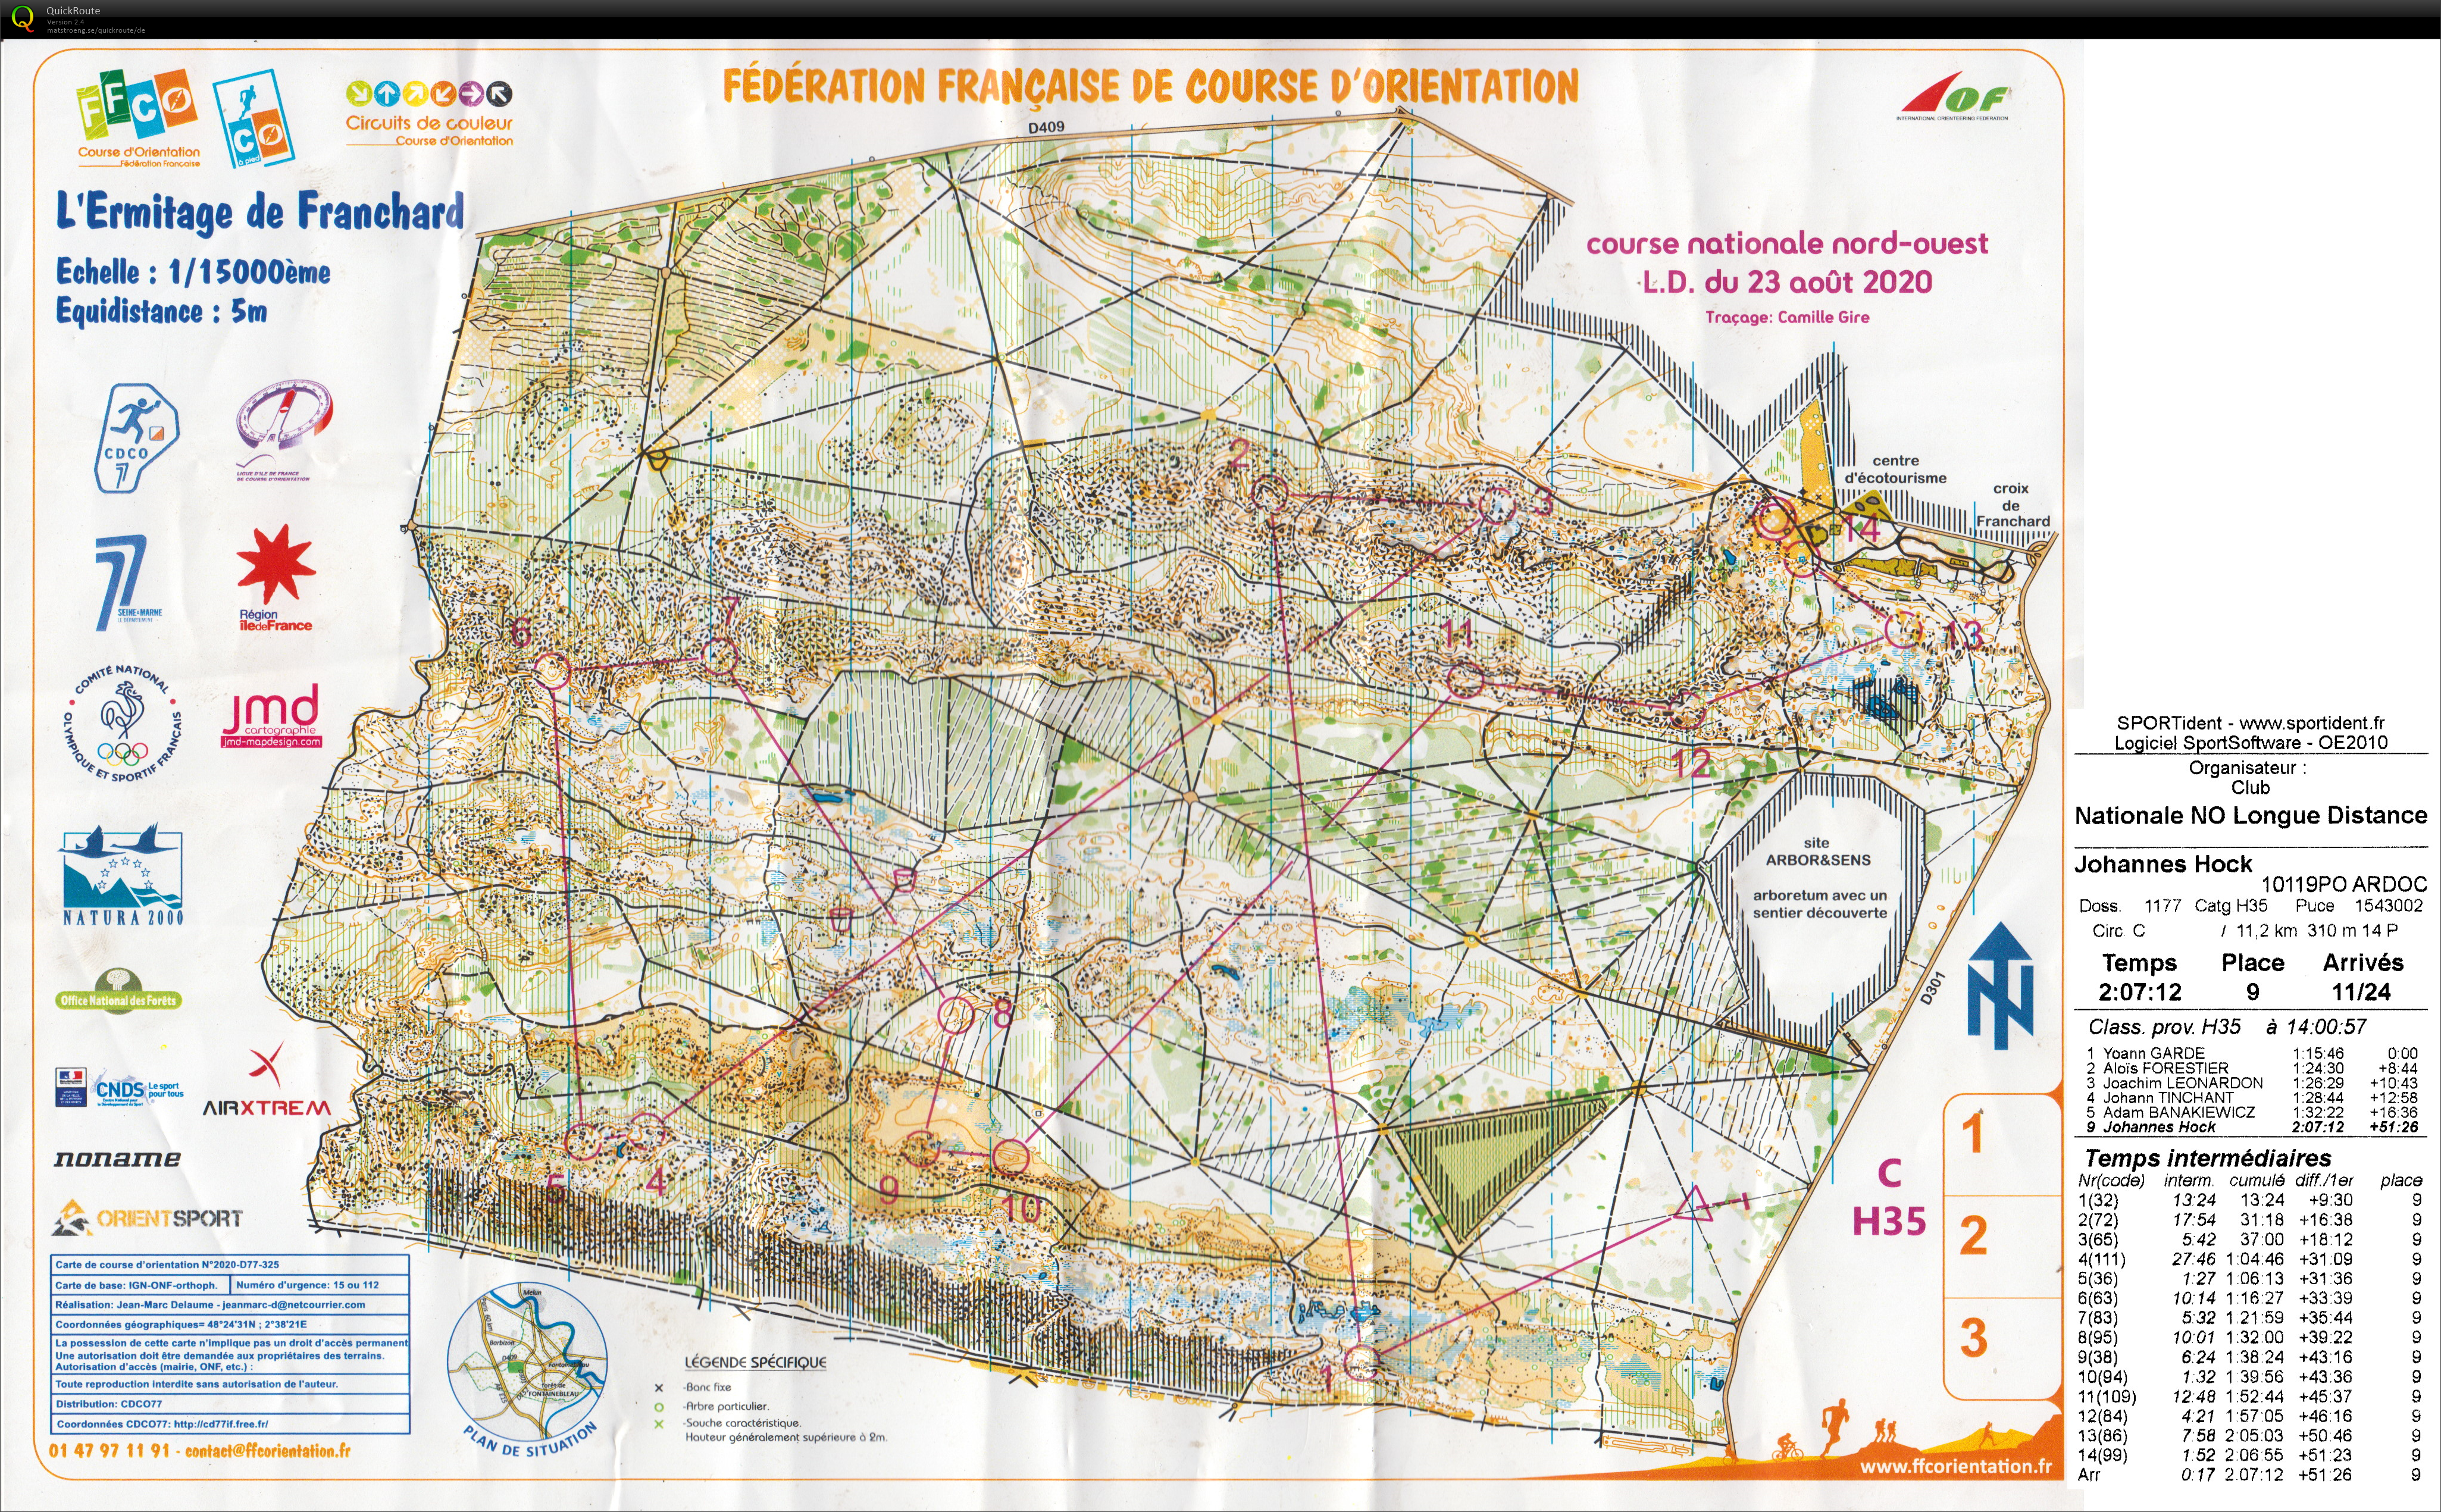 Course nationale L.D. Fontainebleau (23-08-2020)